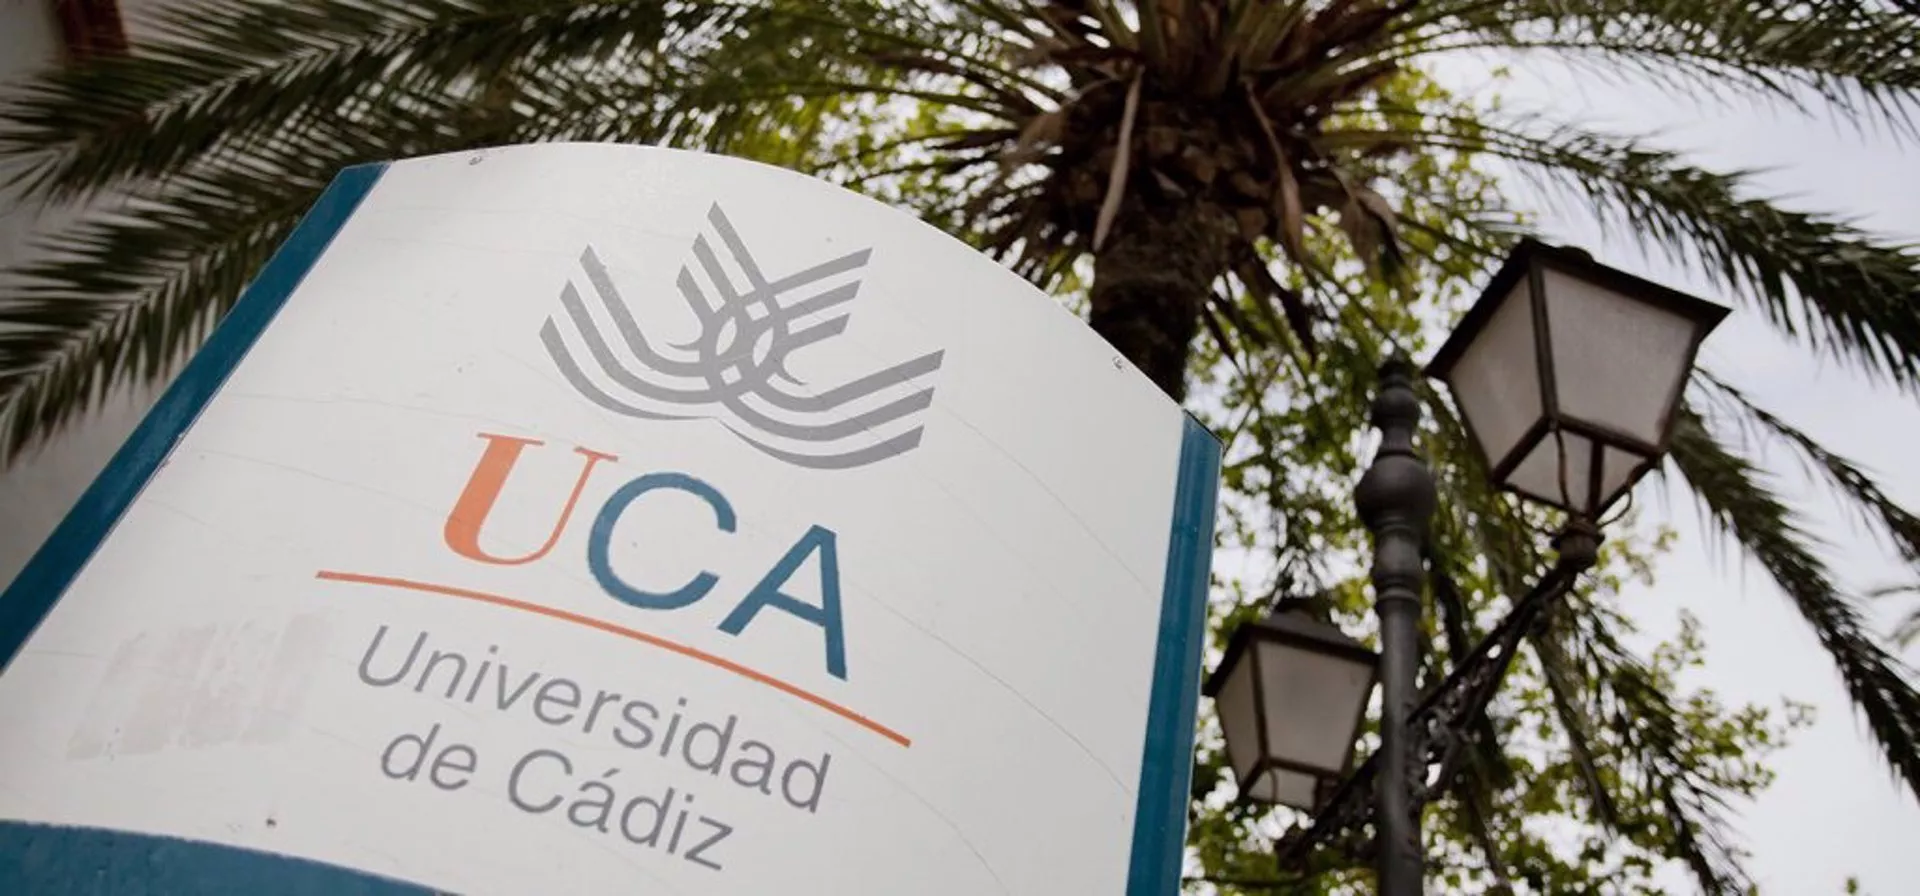 La UCA ofrece nuevos proyectos de formación a nivel digital